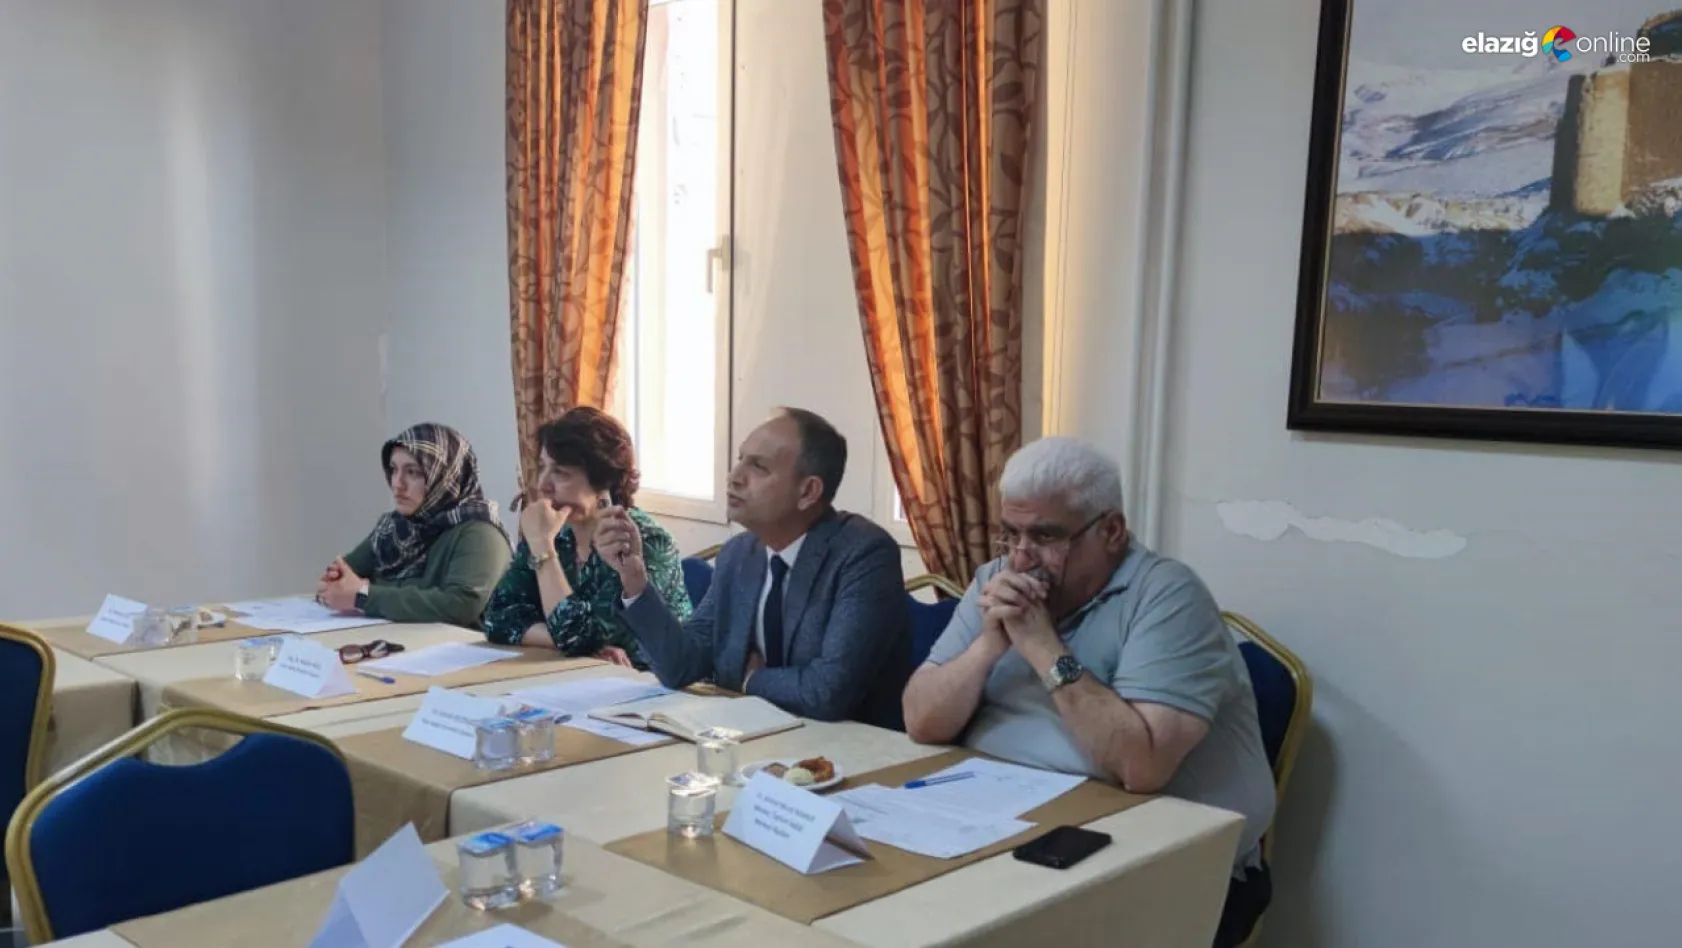 Elazığ'da sağlık sektöründe önemli buluşma